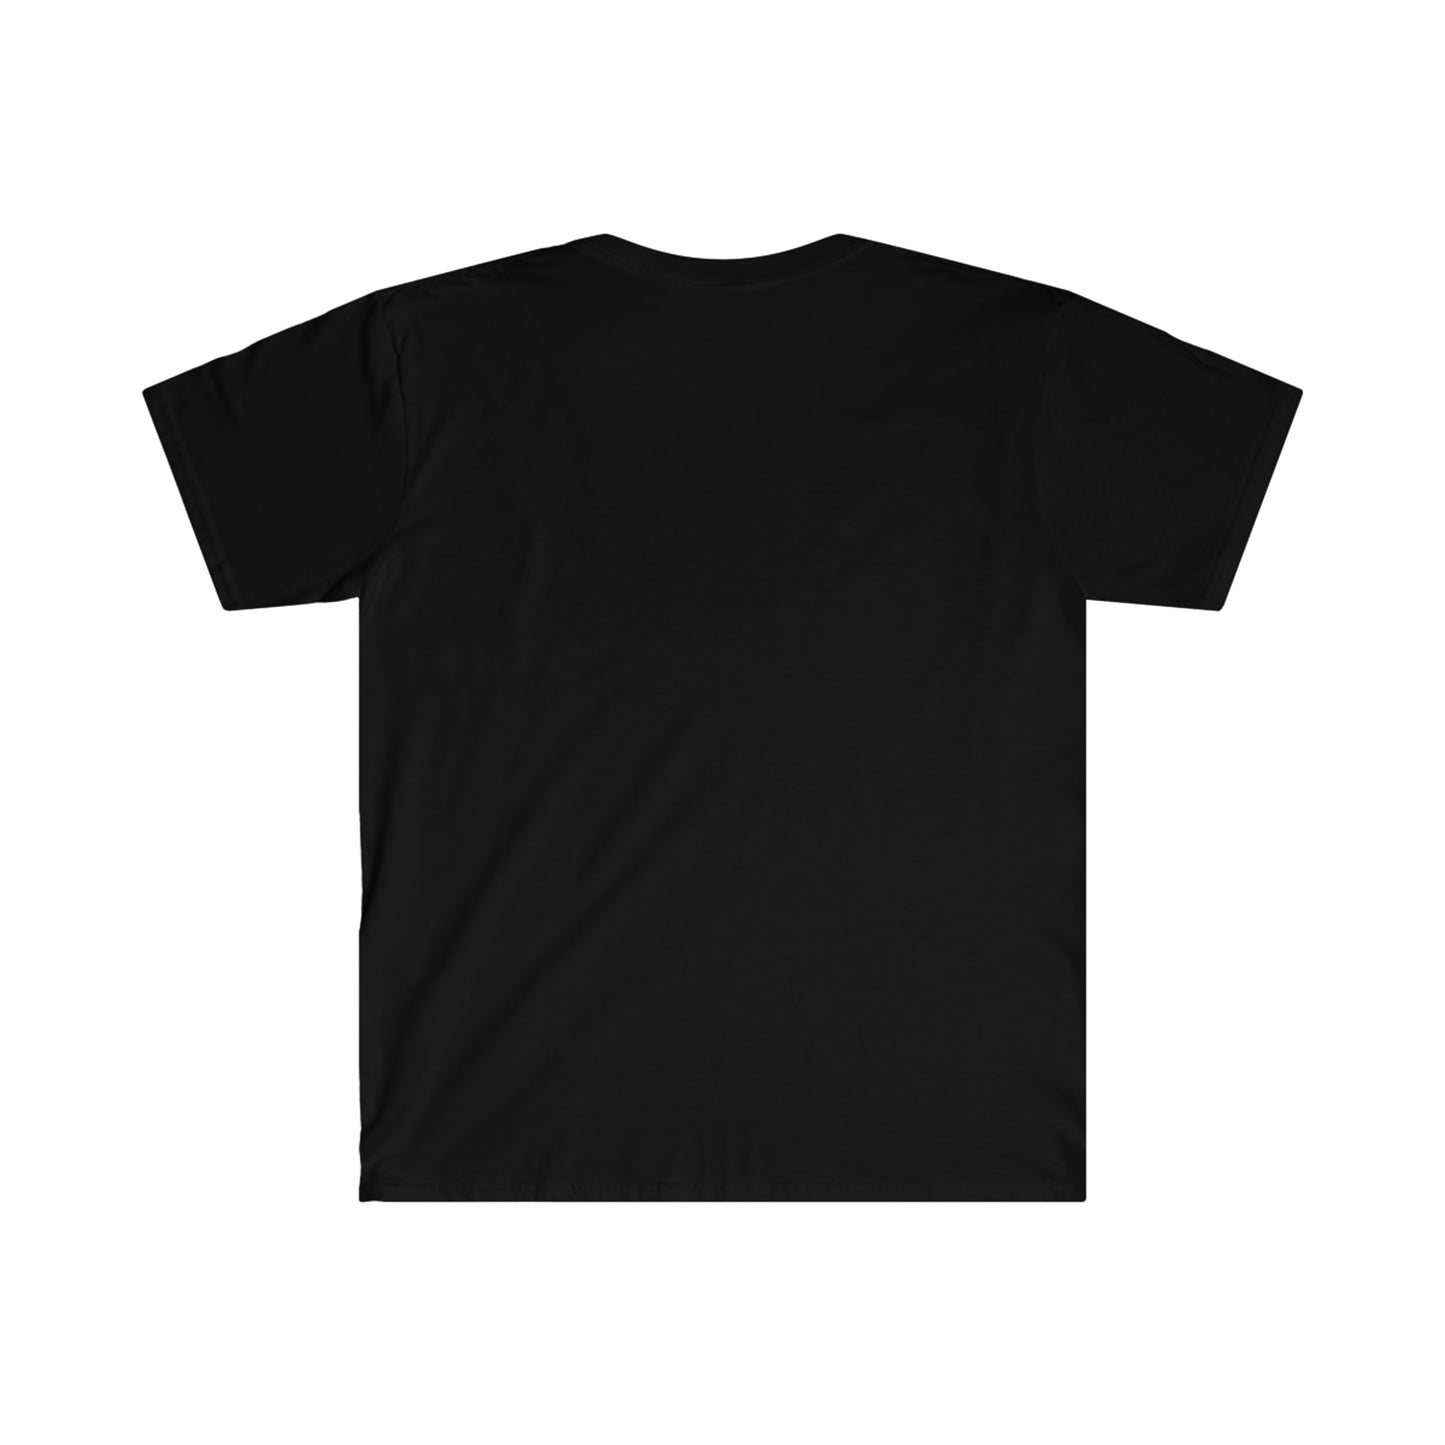 Generosity Unisex Softstyle T-Shirt